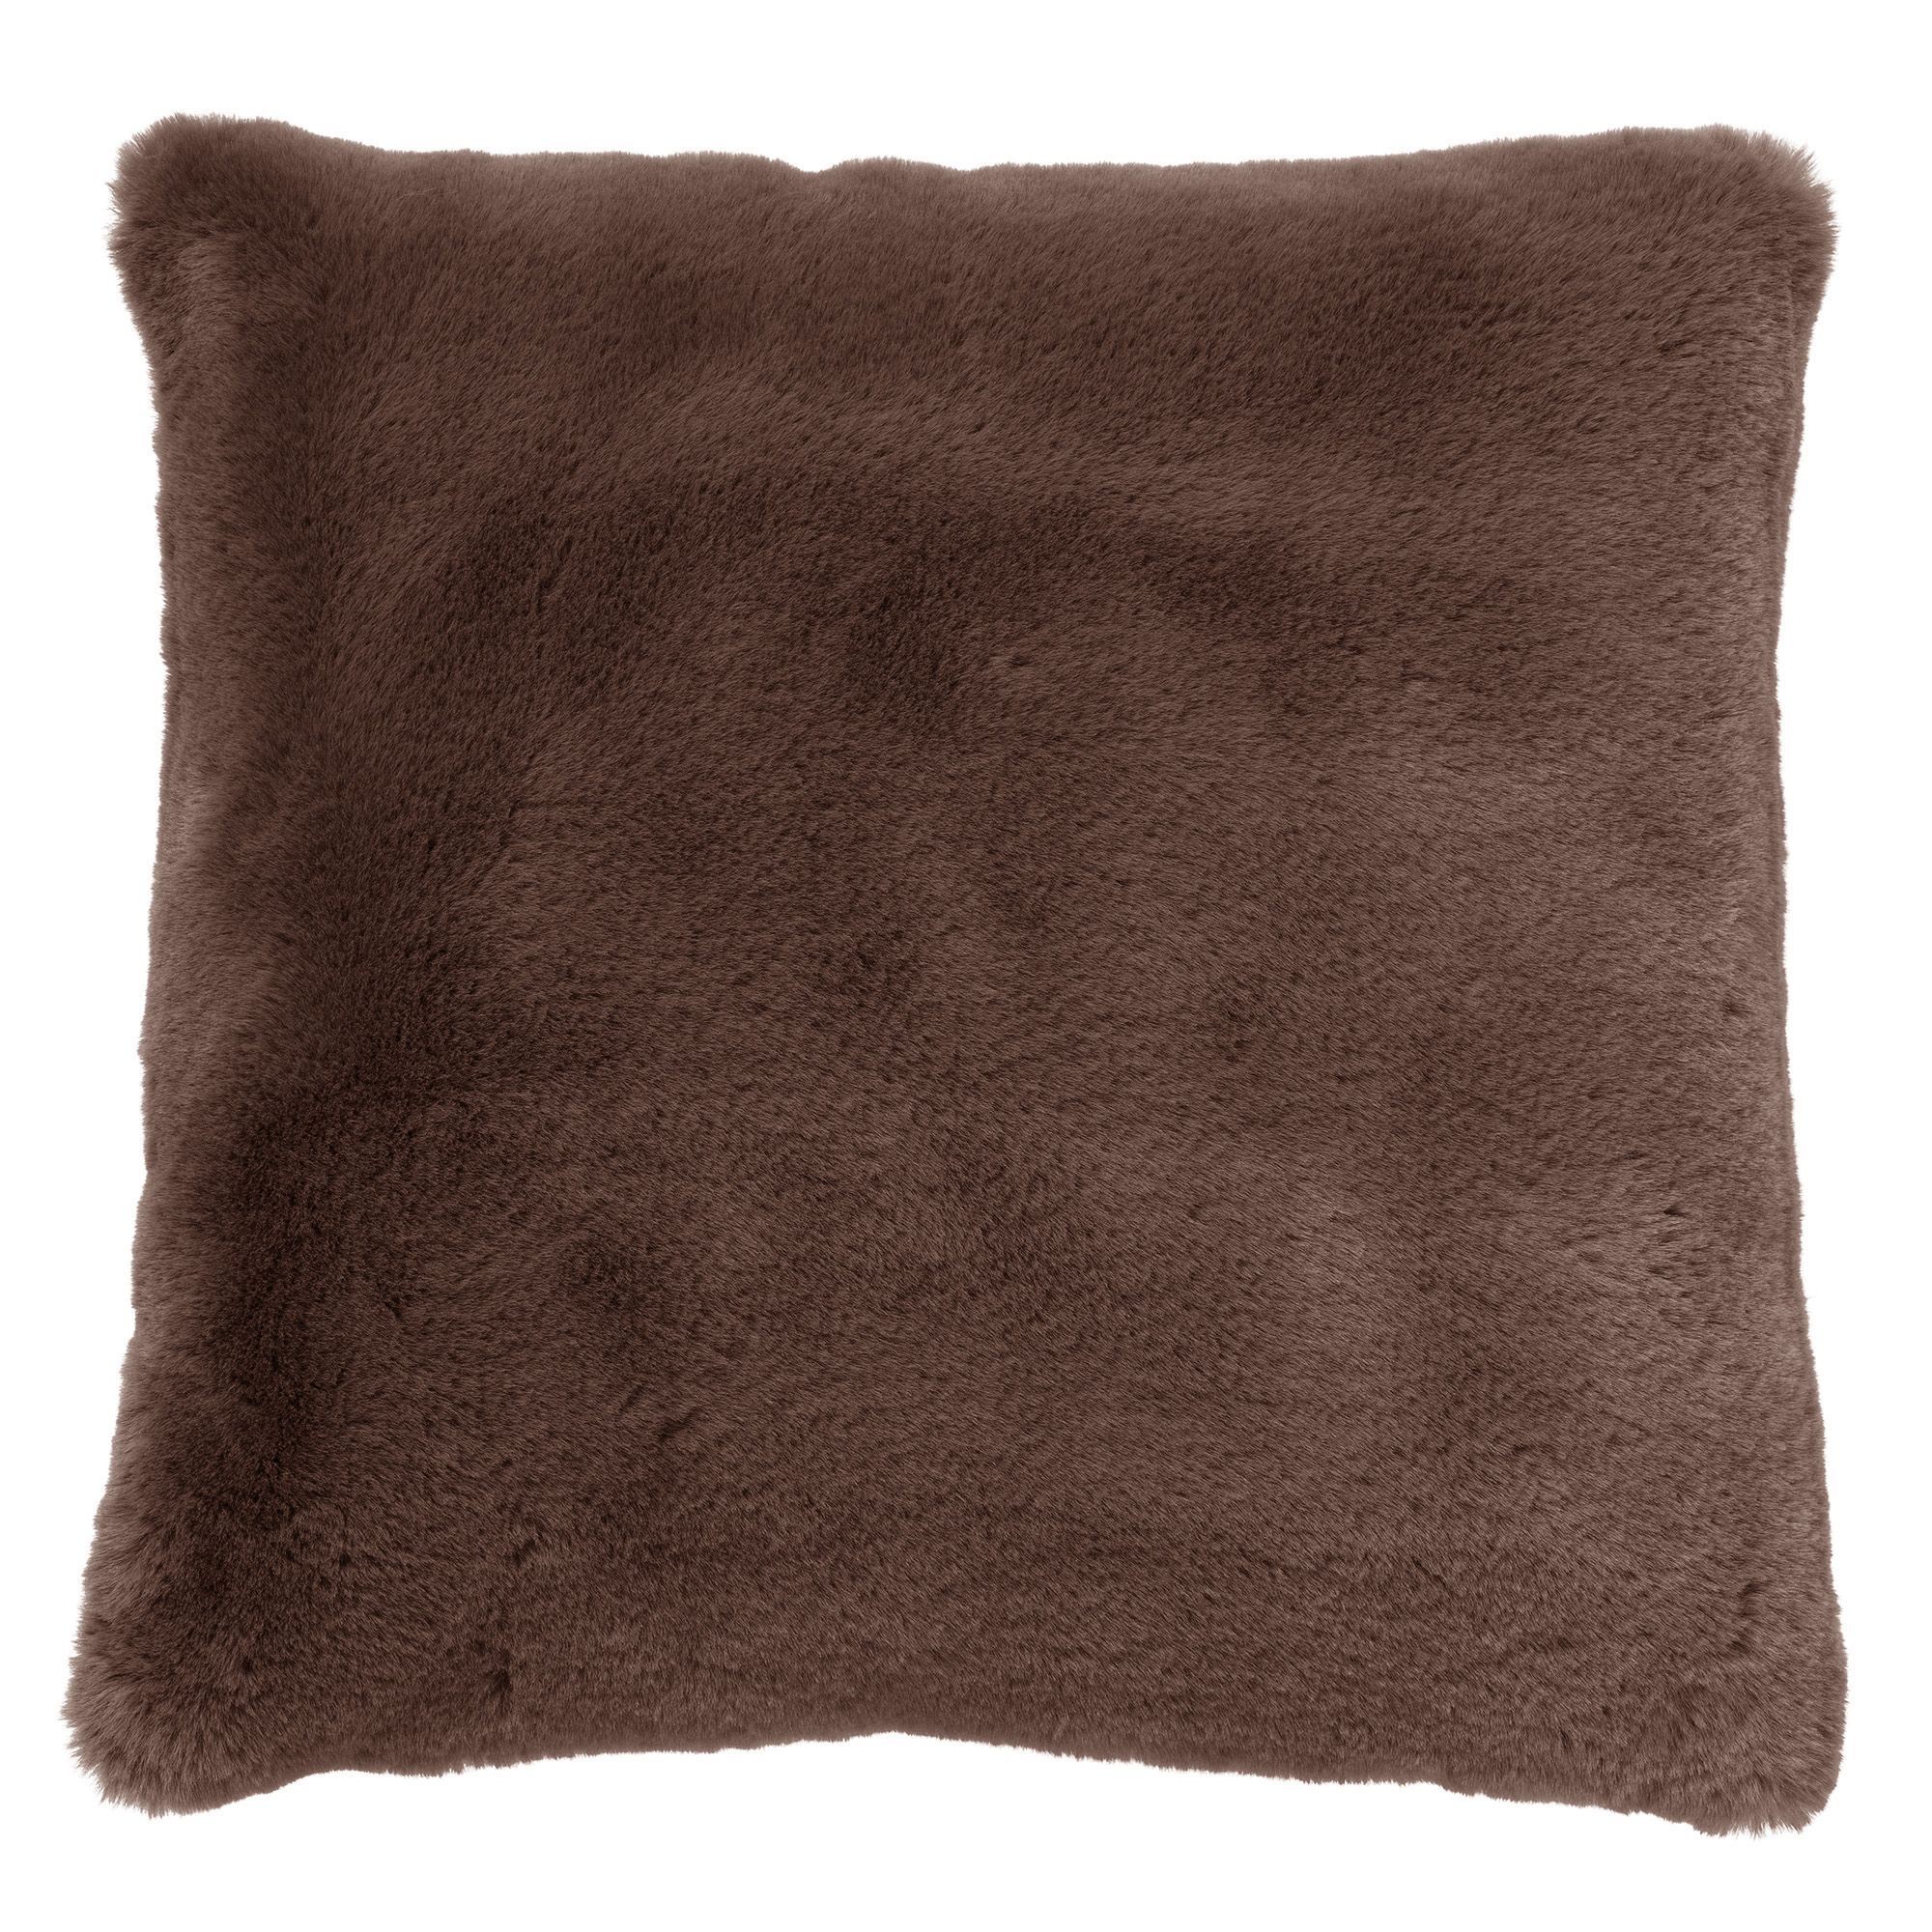 ZAYA - Cushion 60x60 cm - Chocolate Martini - brown